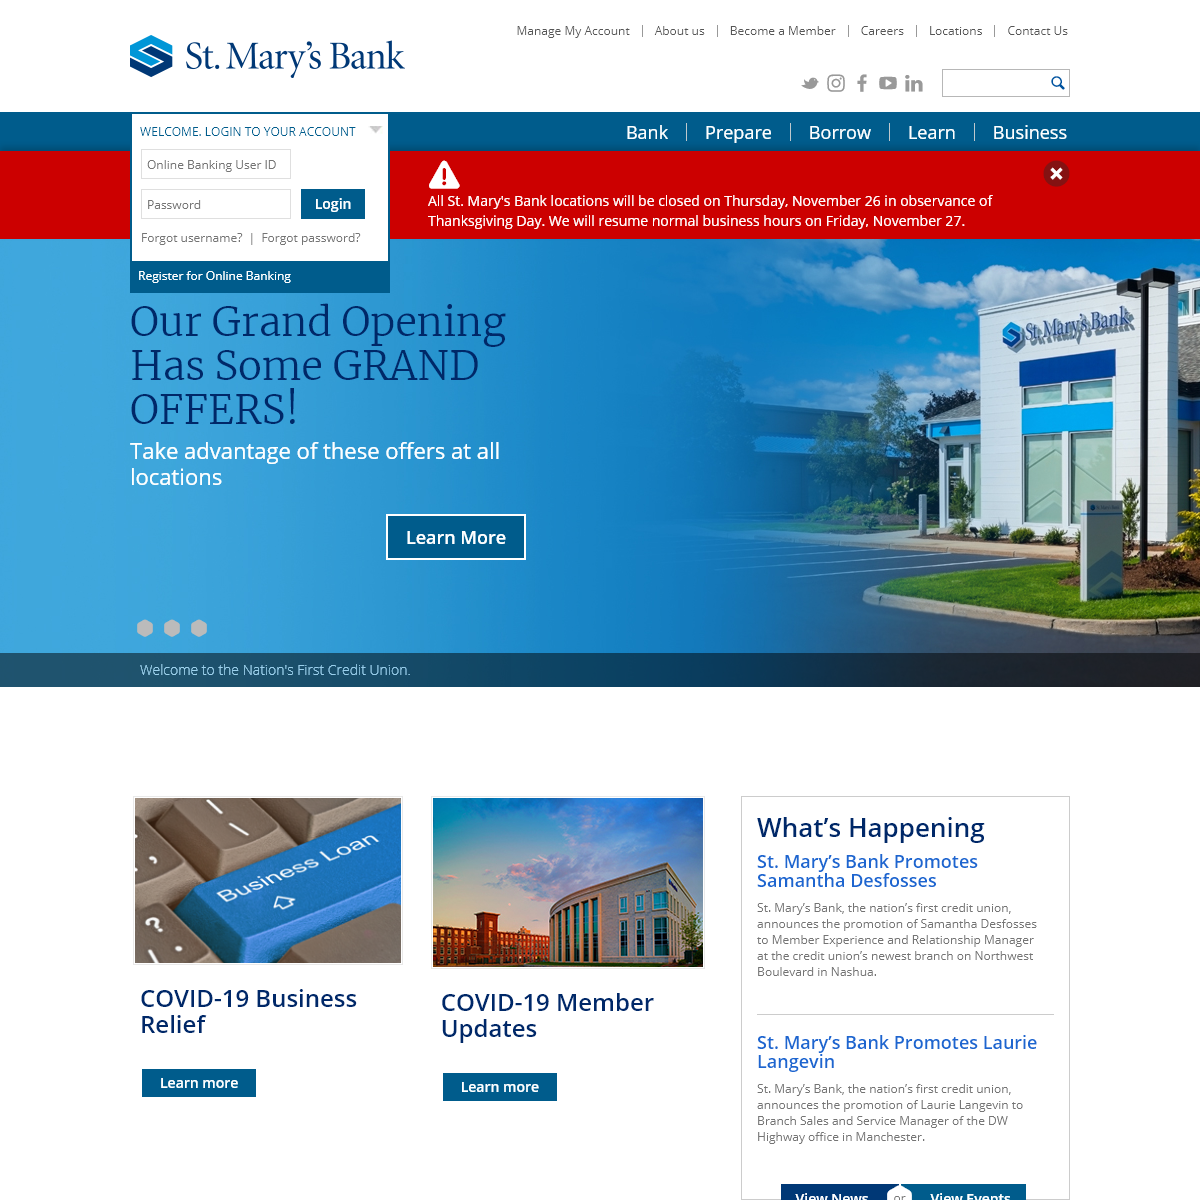 A complete backup of stmarysbank.com